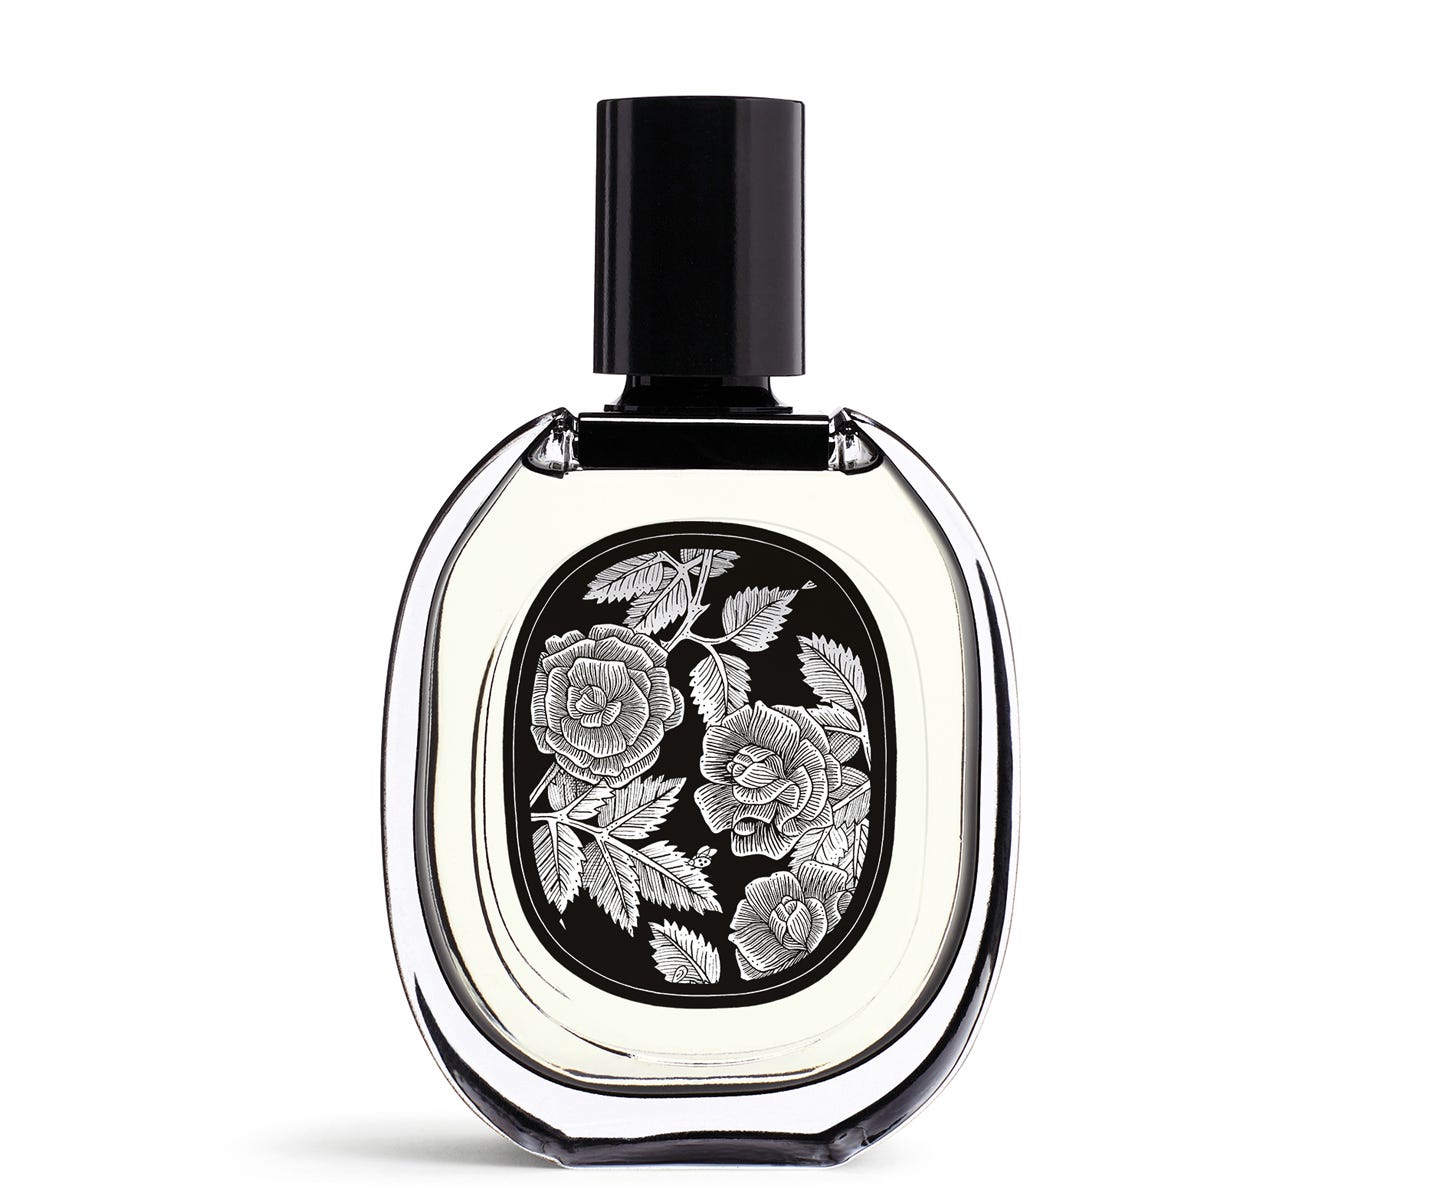 Eau Rose - Eau de parfum 75ml | Diptyque Paris